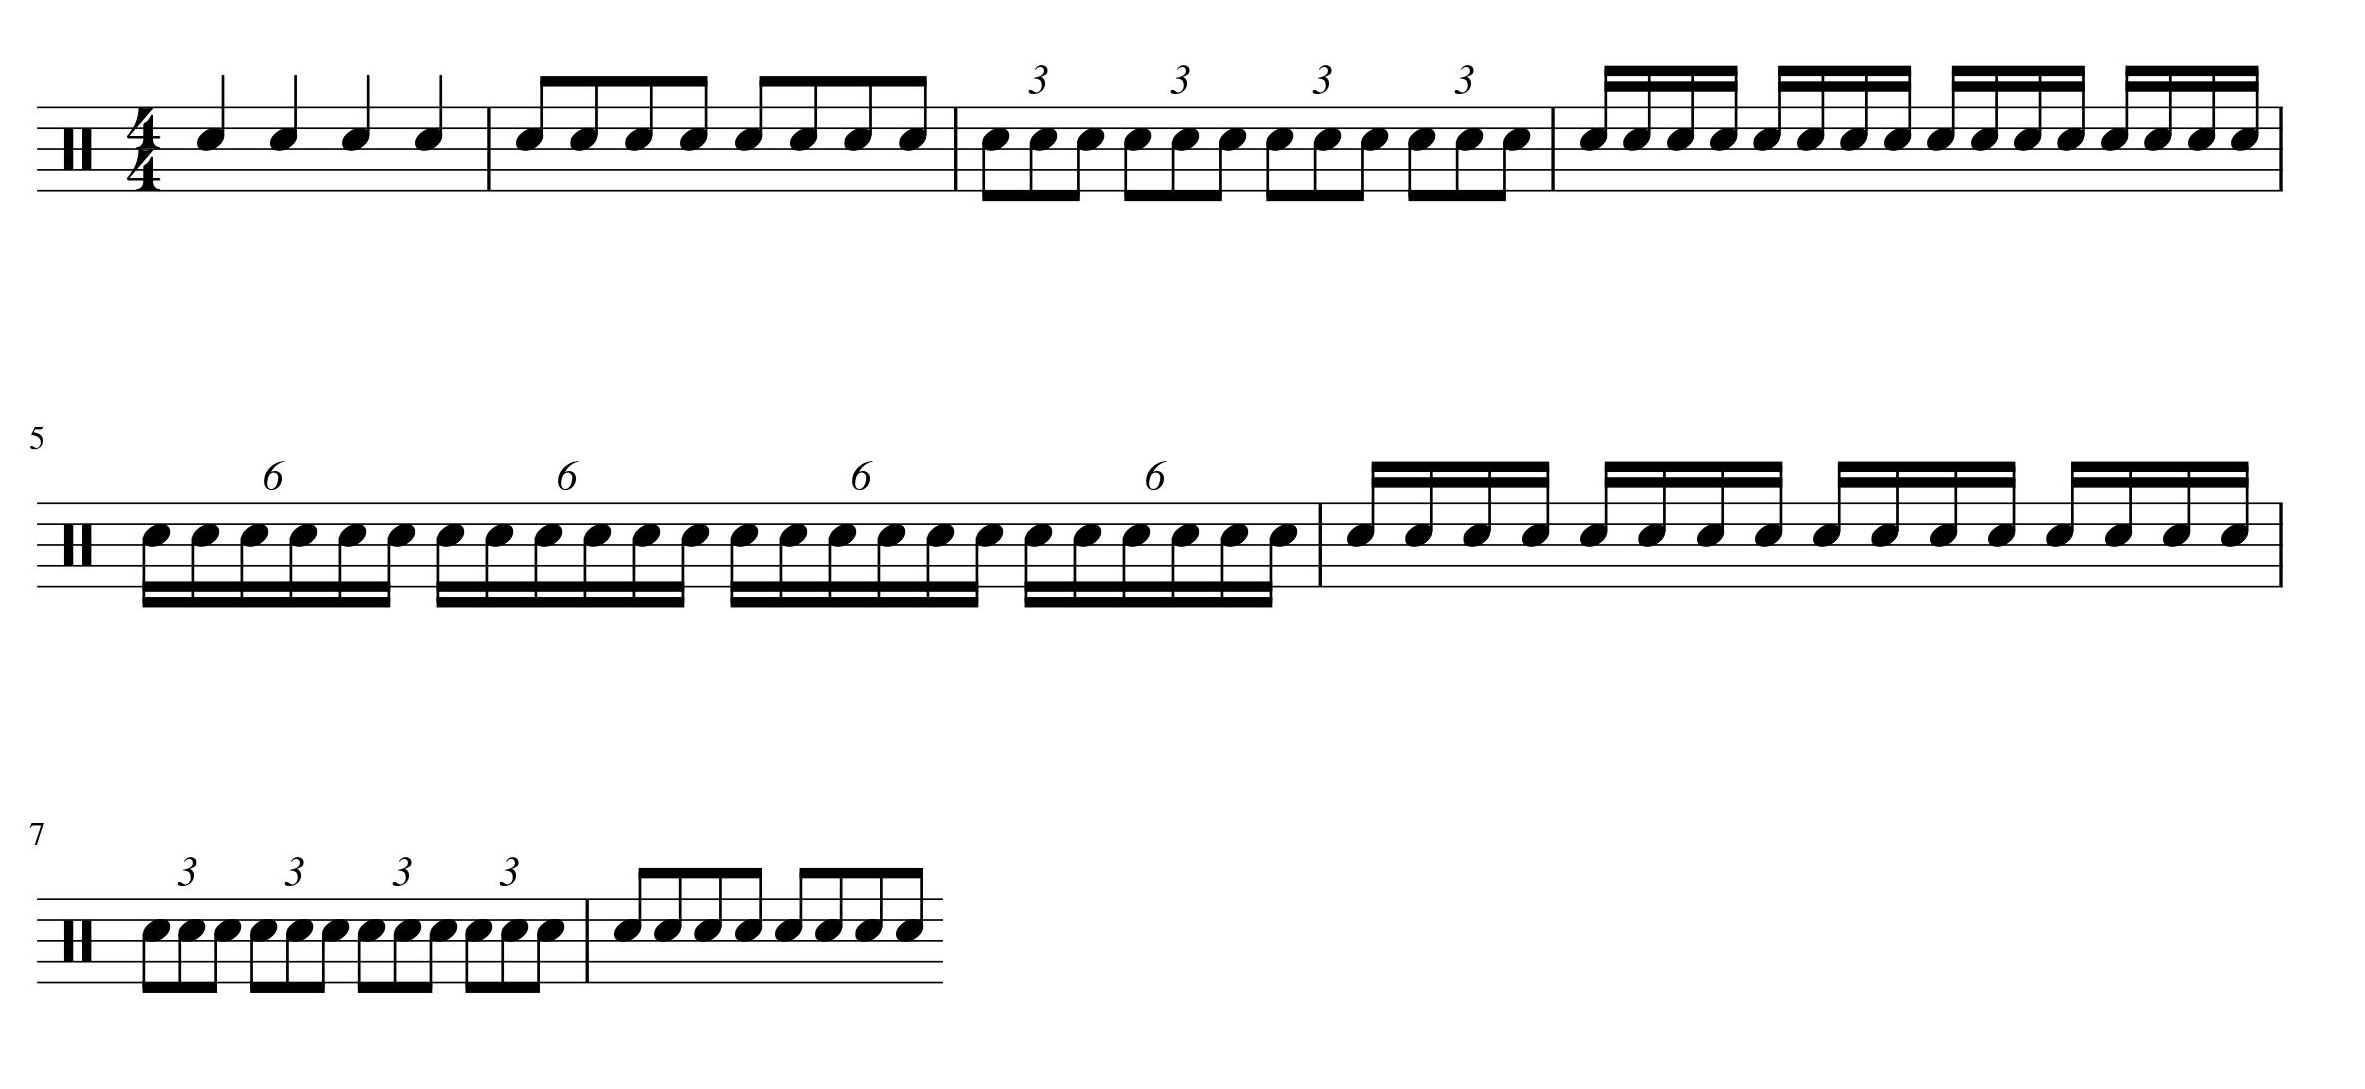 ドラムチェンジアップ練習楽譜2